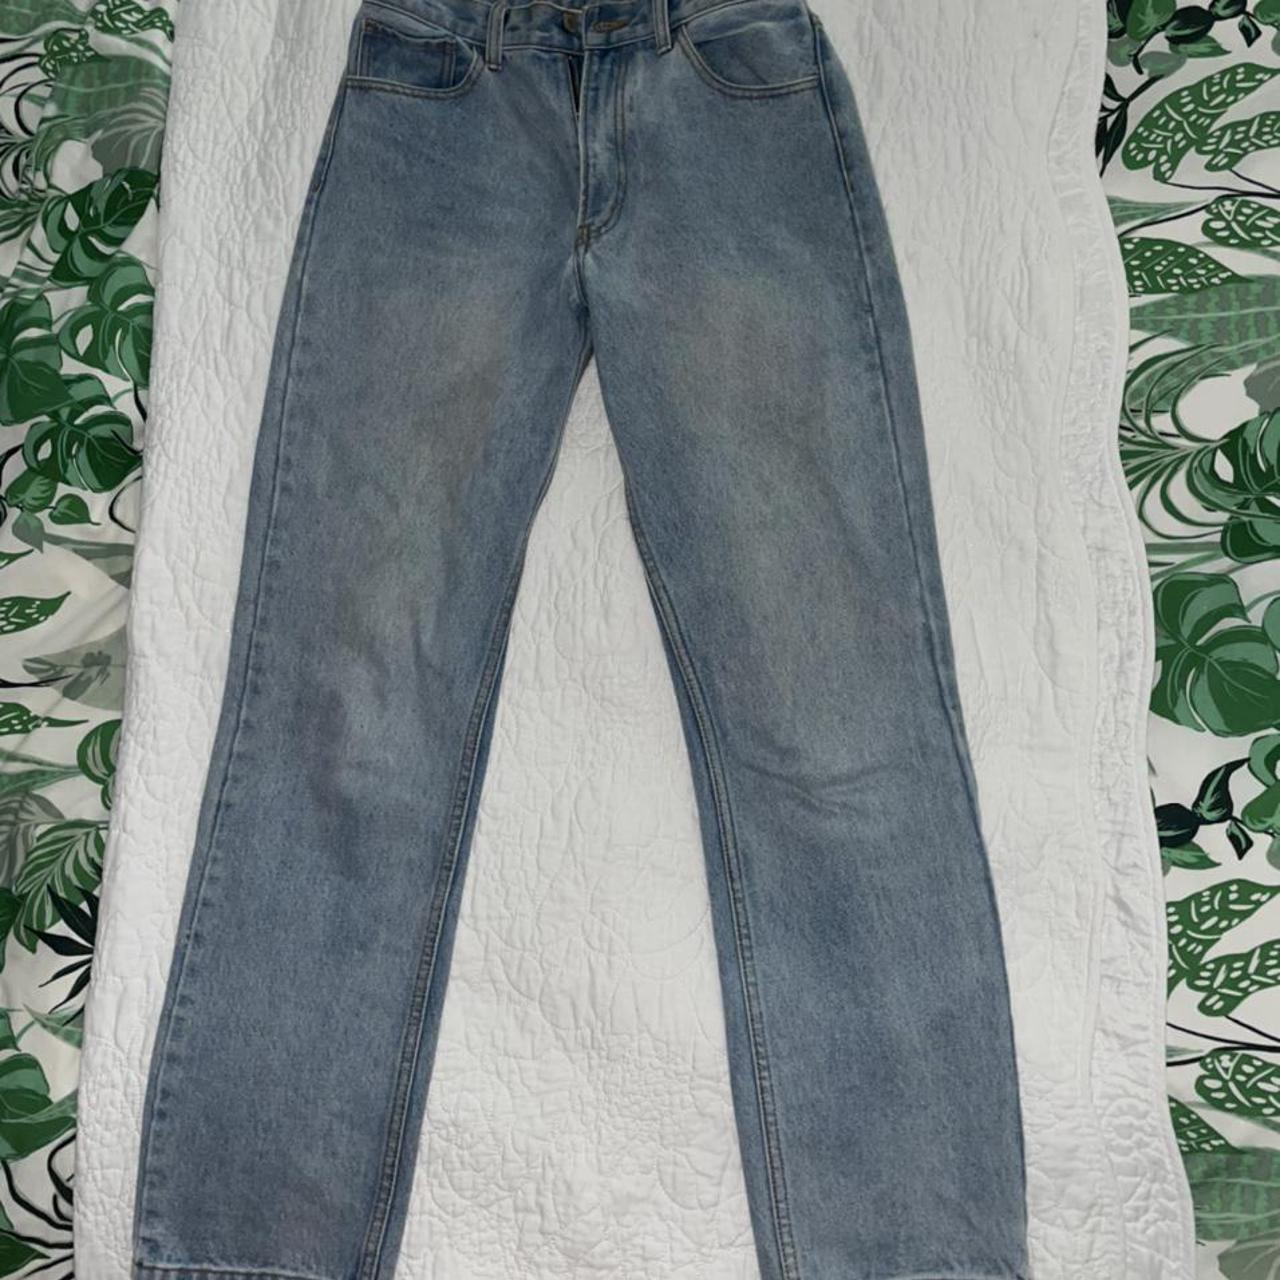 Brandy Melville Women's Jeans | Depop